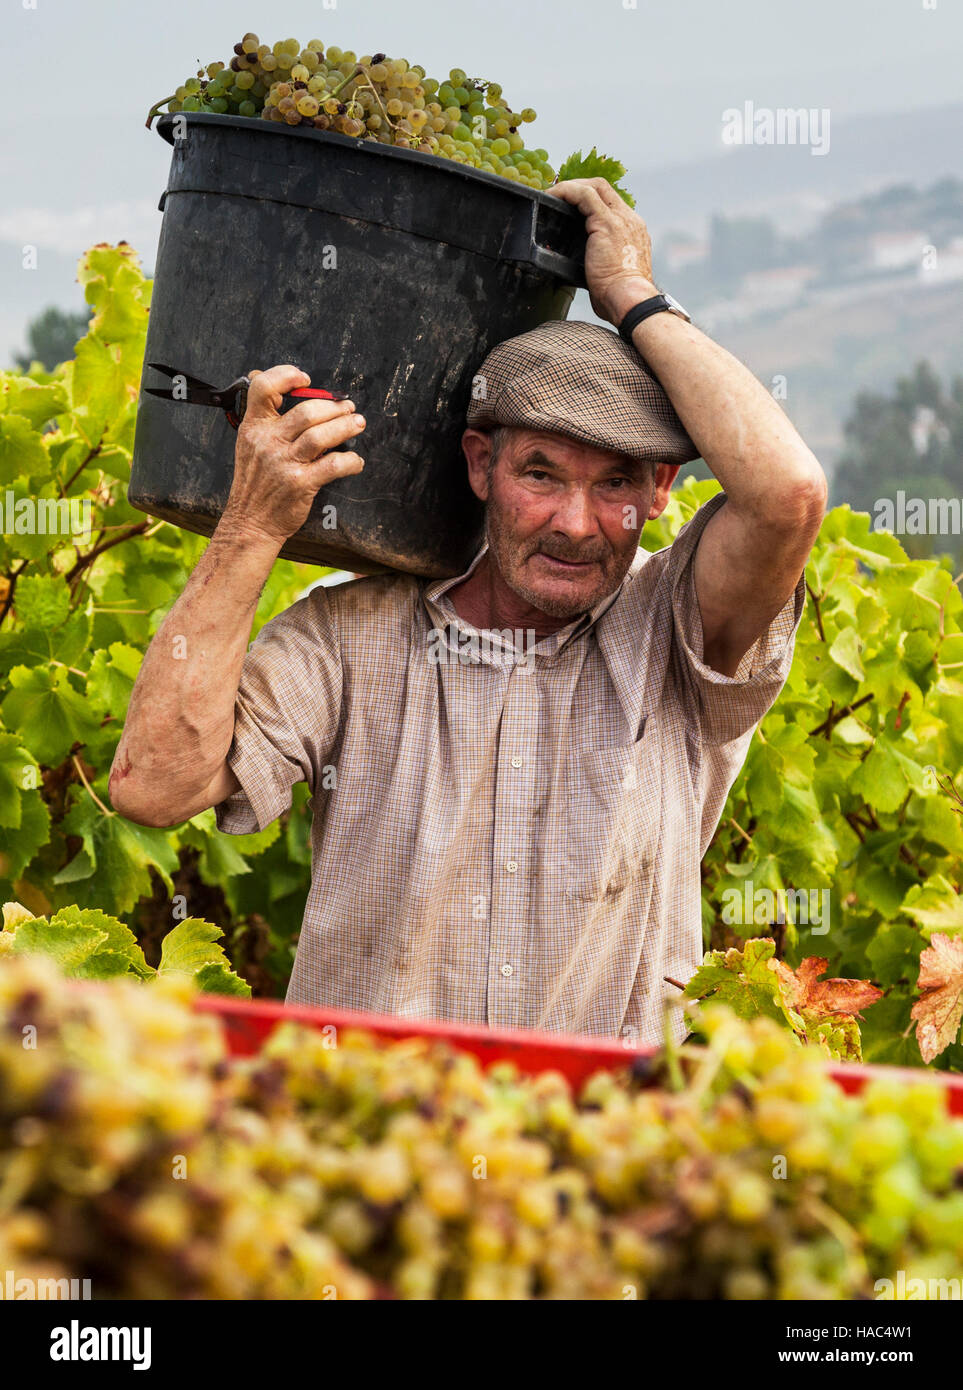 Farmer harvesting grapes in Portugal Stock Photo